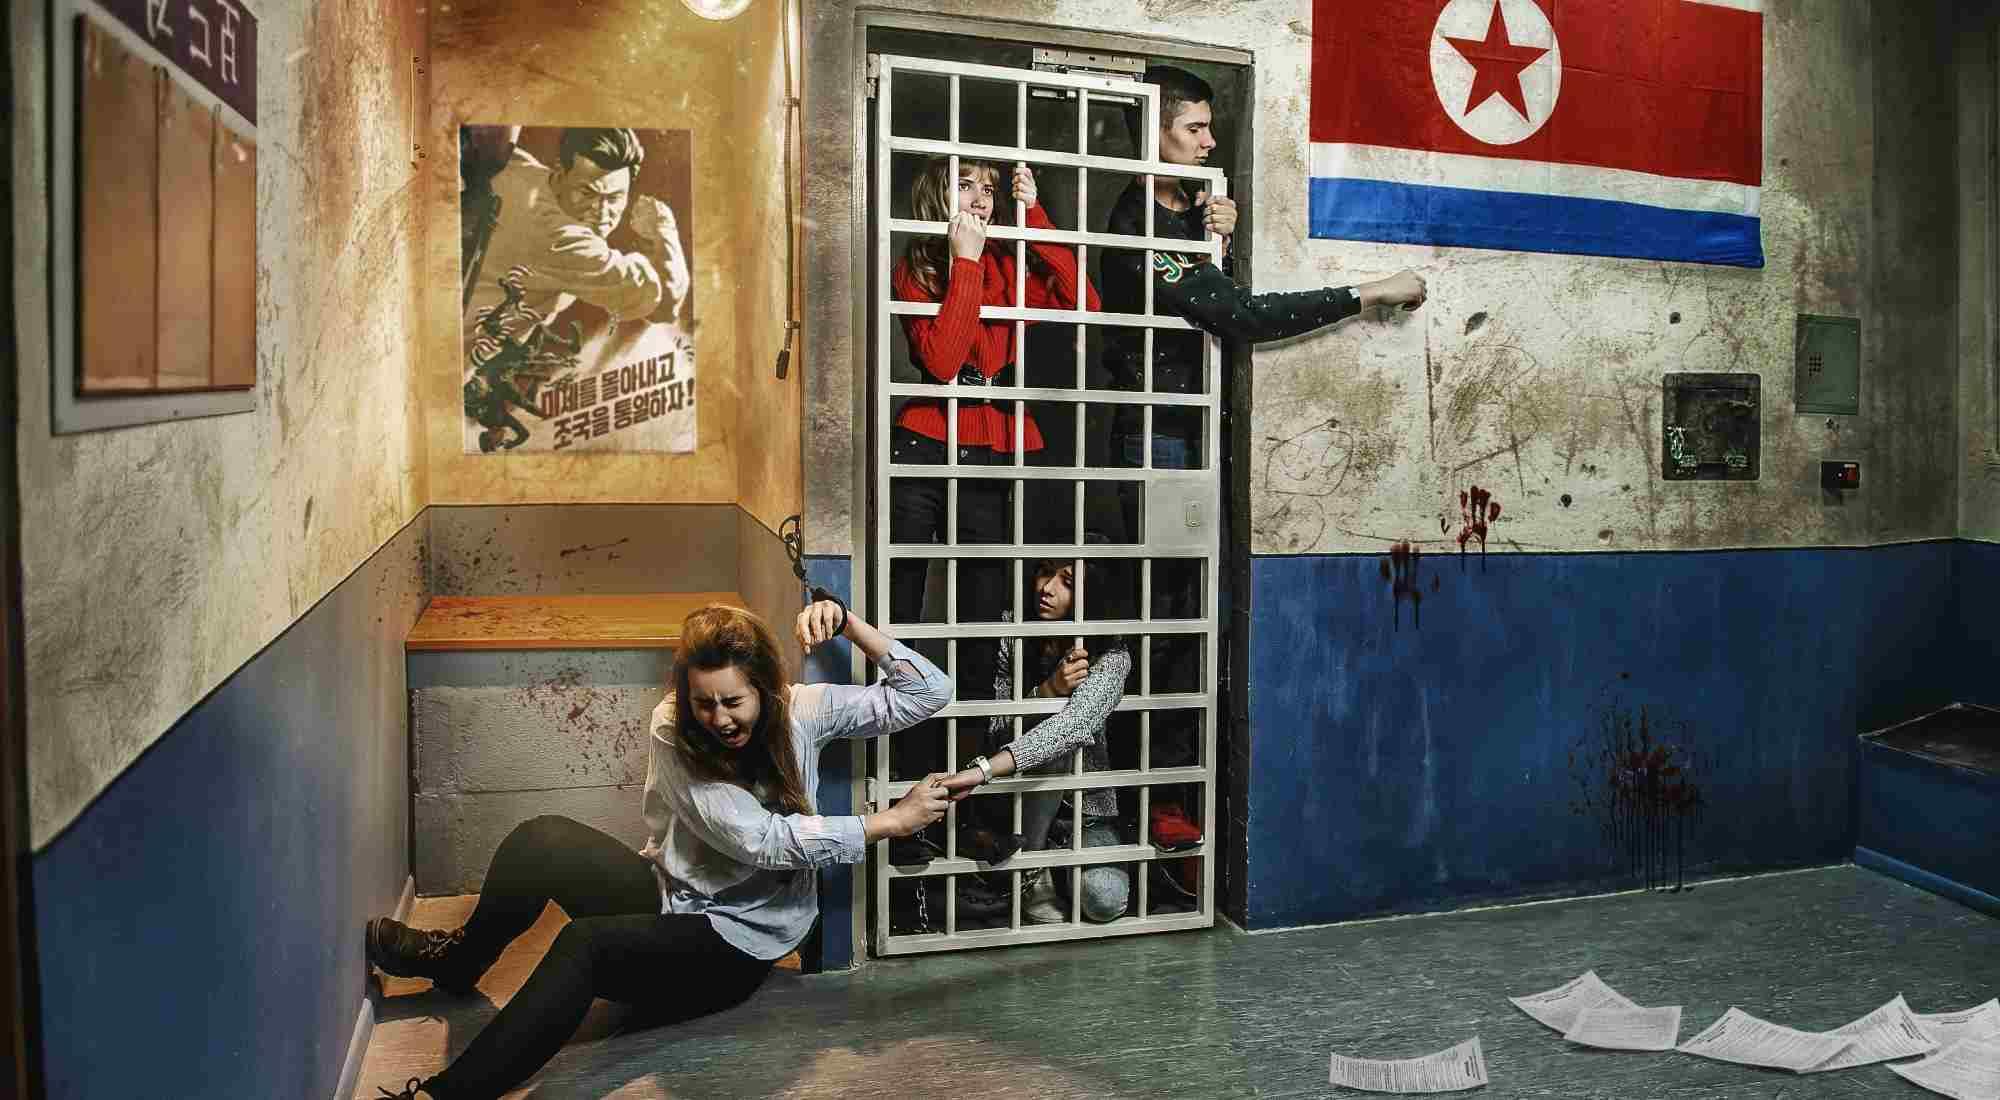 Квест Шпионская история: Посольство Северной Кореи в Москве фото 0